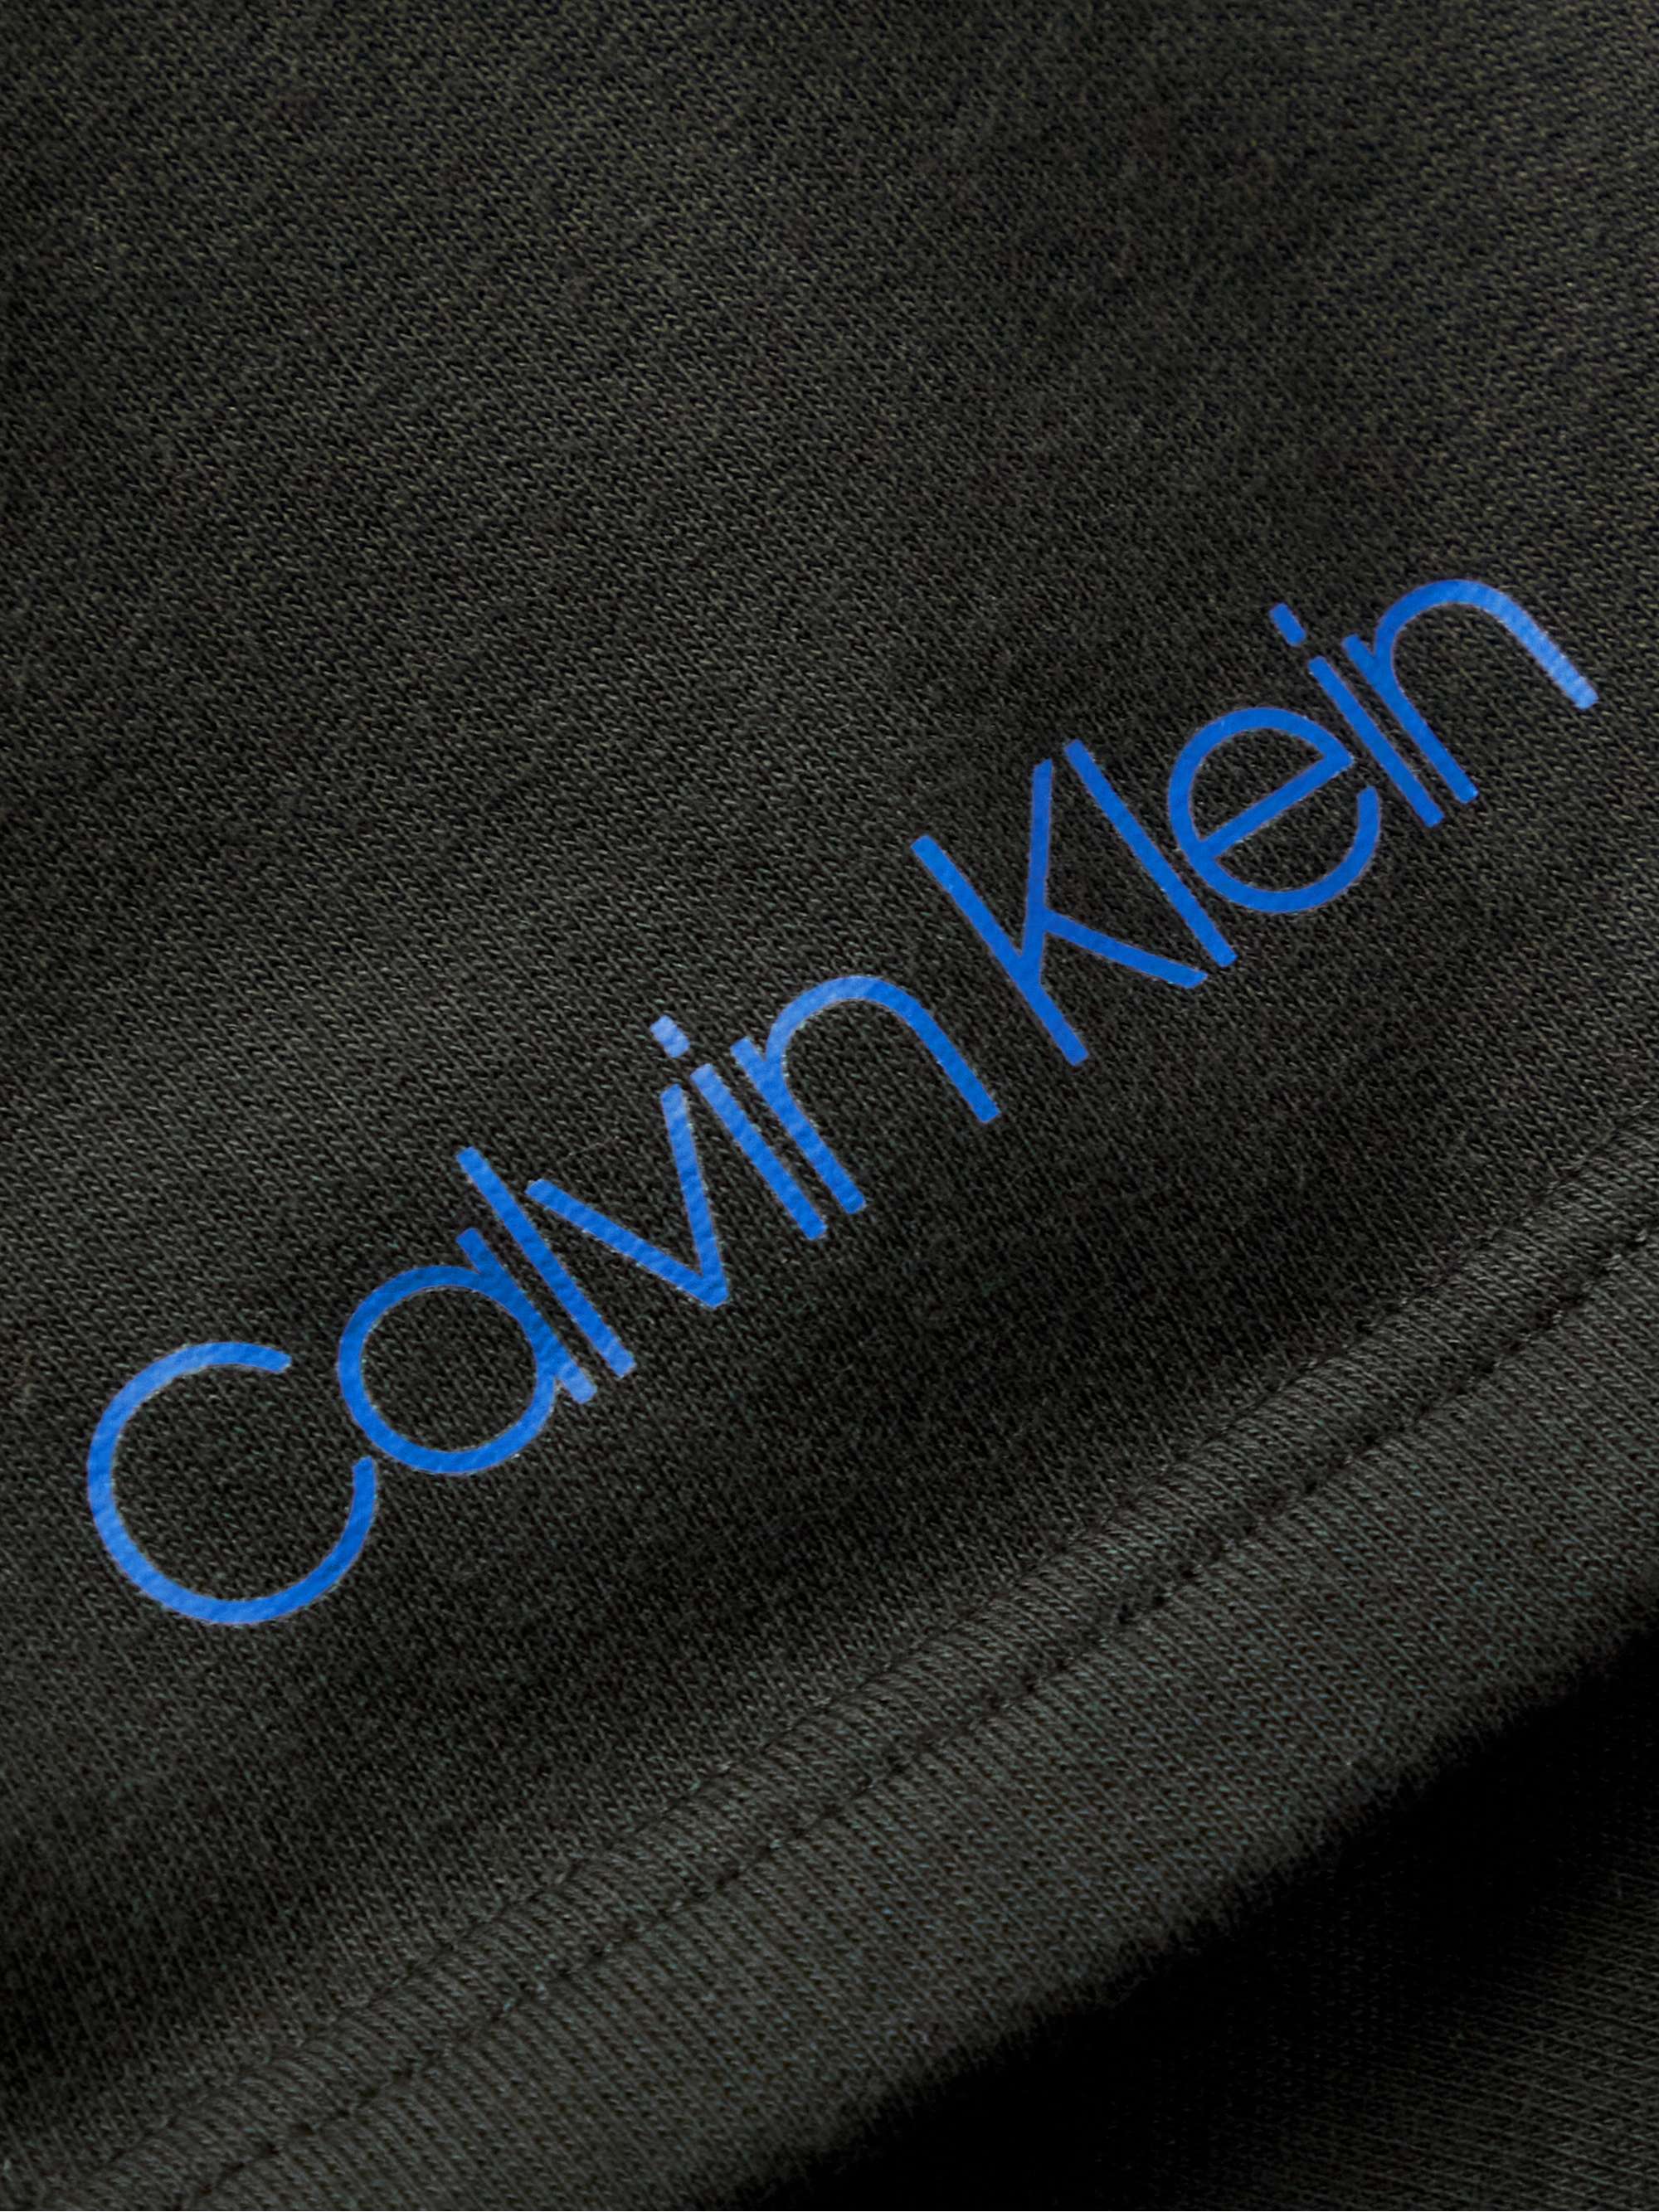 CALVIN KLEIN UNDERWEAR Slim-Fit Loopback Stretch-Cotton Jersey Drawstring Shorts